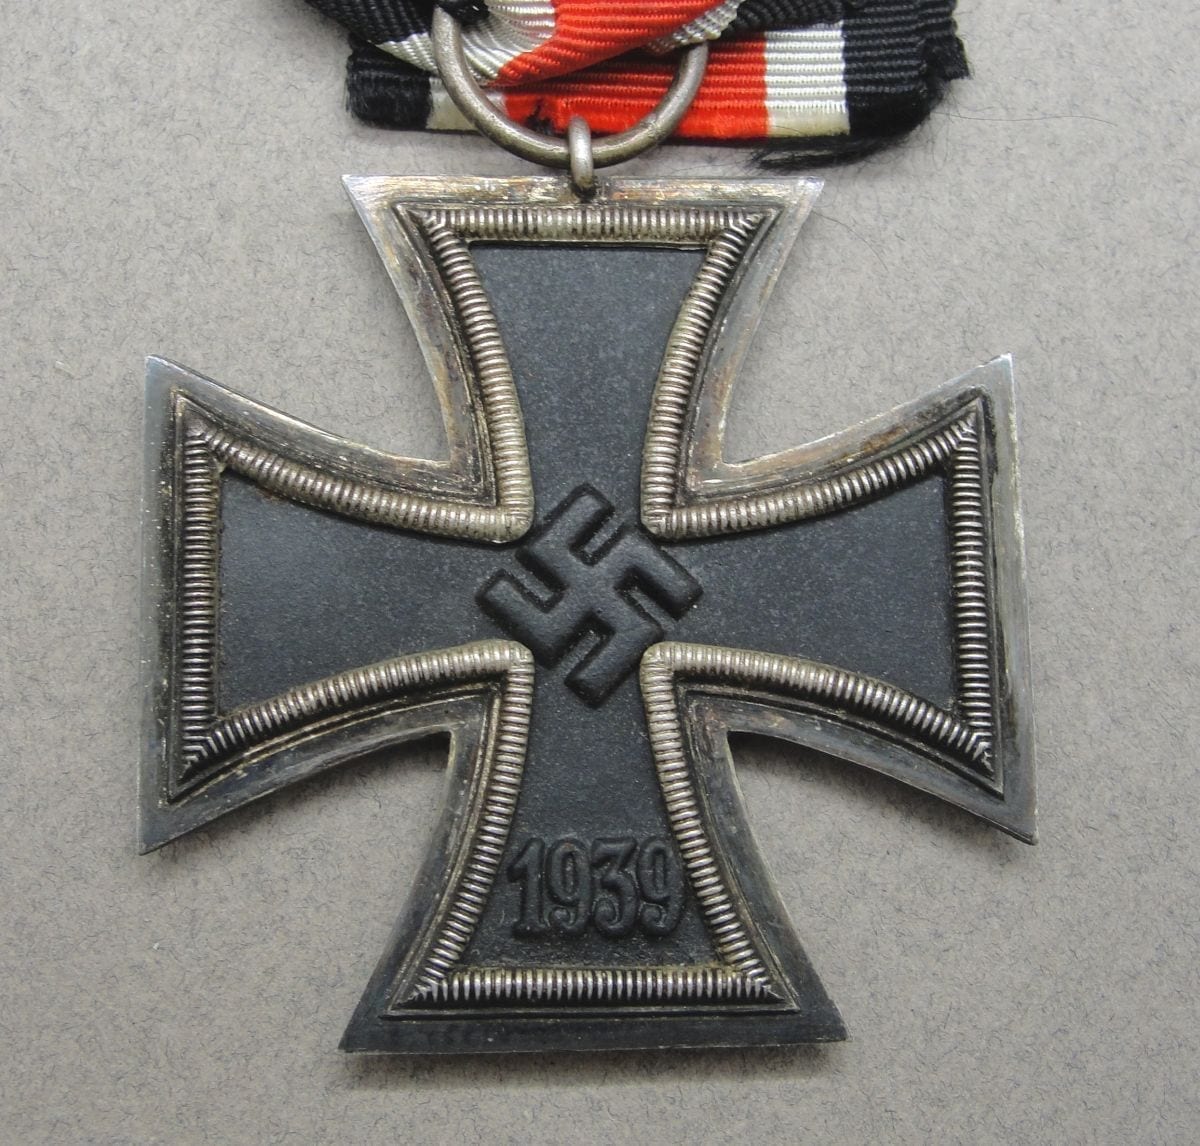 1939 Iron Cross Second Class by "11" - Grossmann & Co. Wien